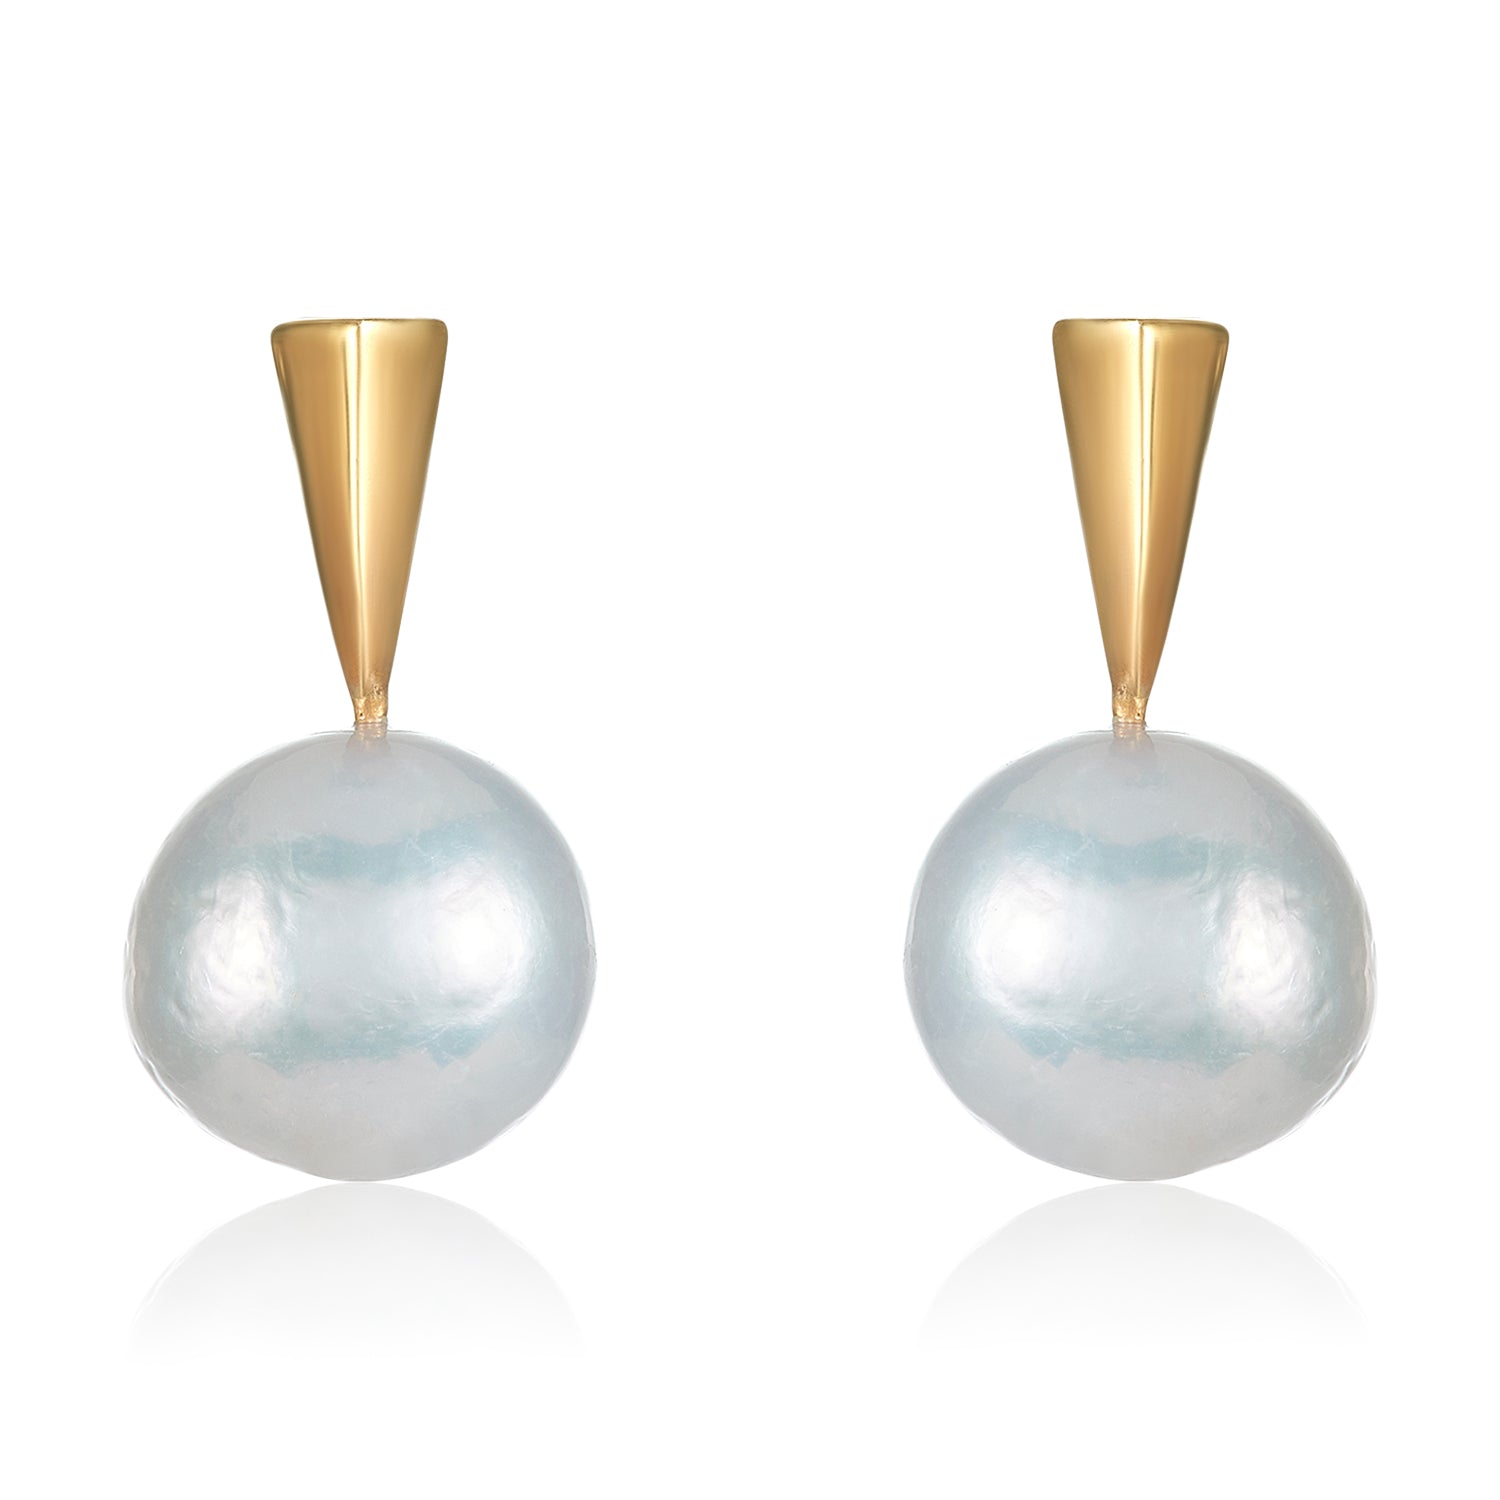 White Pearl and Spike Earrings